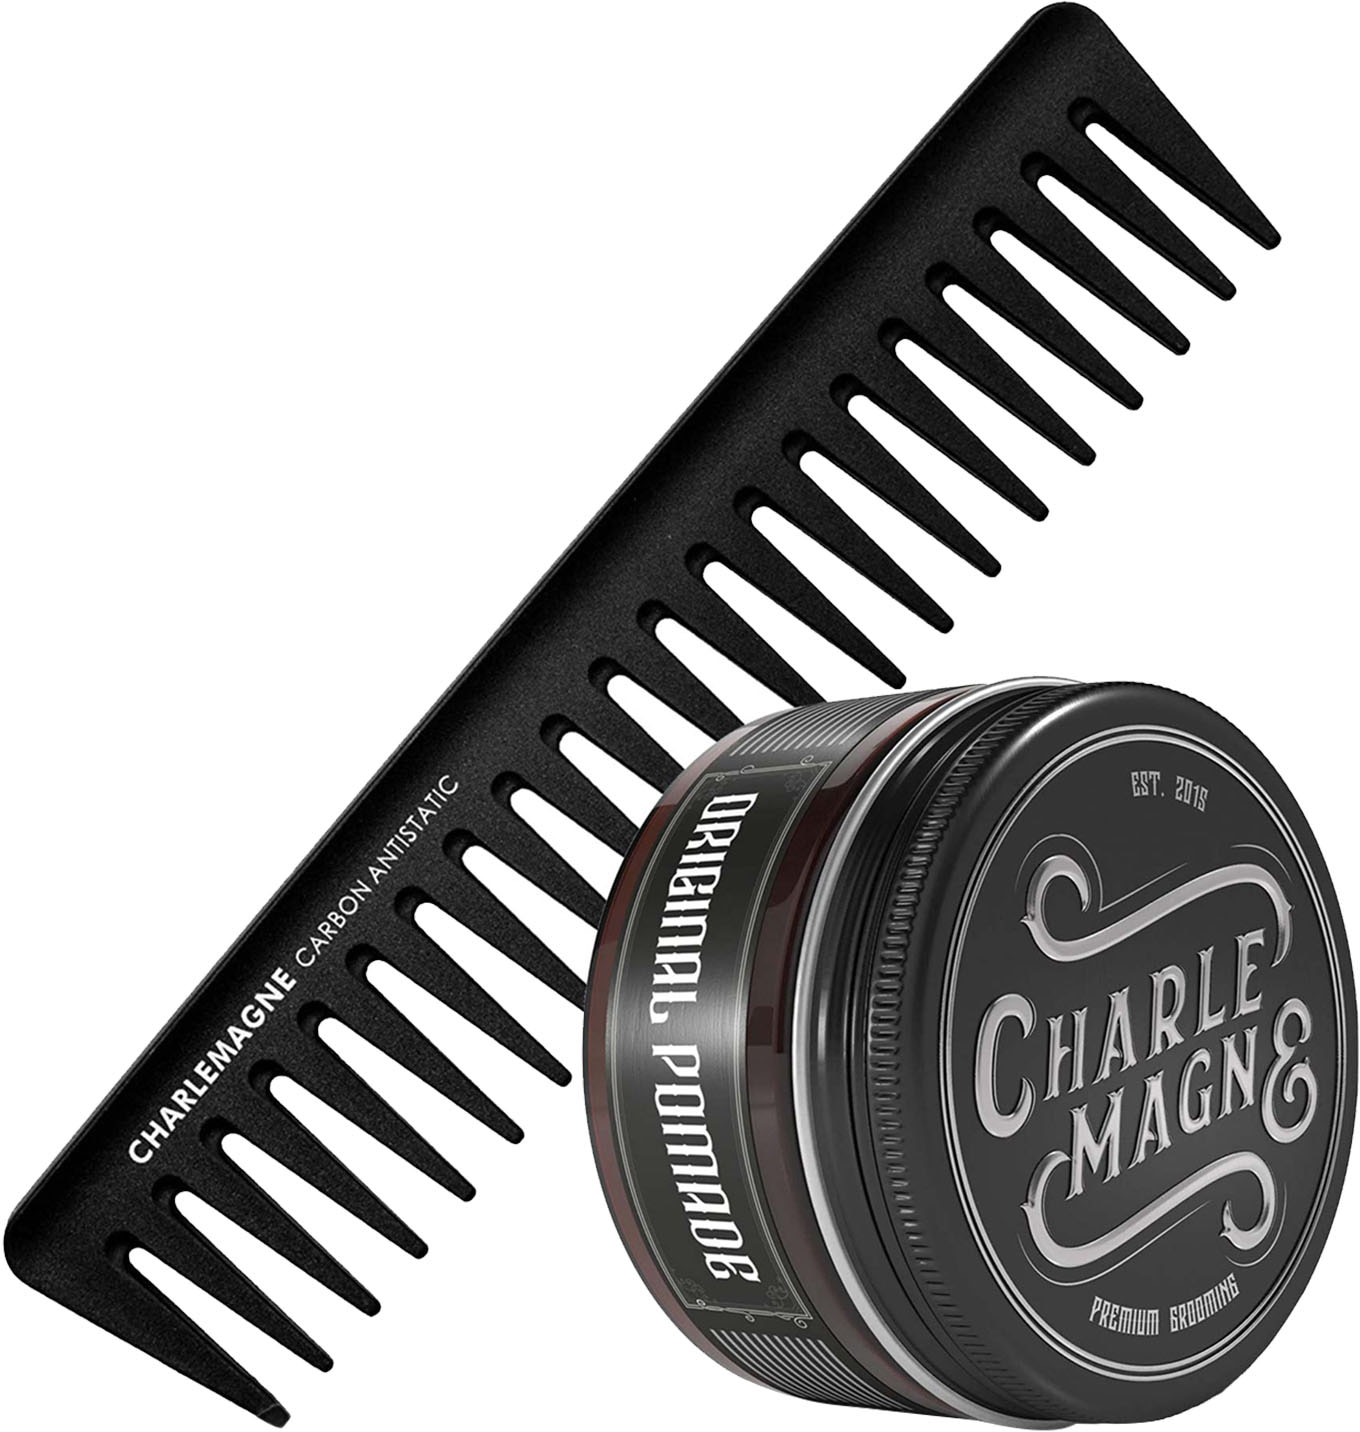 CHARLEMAGNE Haarpflege-Set »The OG\'s Essentials«, (2 tlg.) kaufen bei OTTO | Haarpflege-Sets